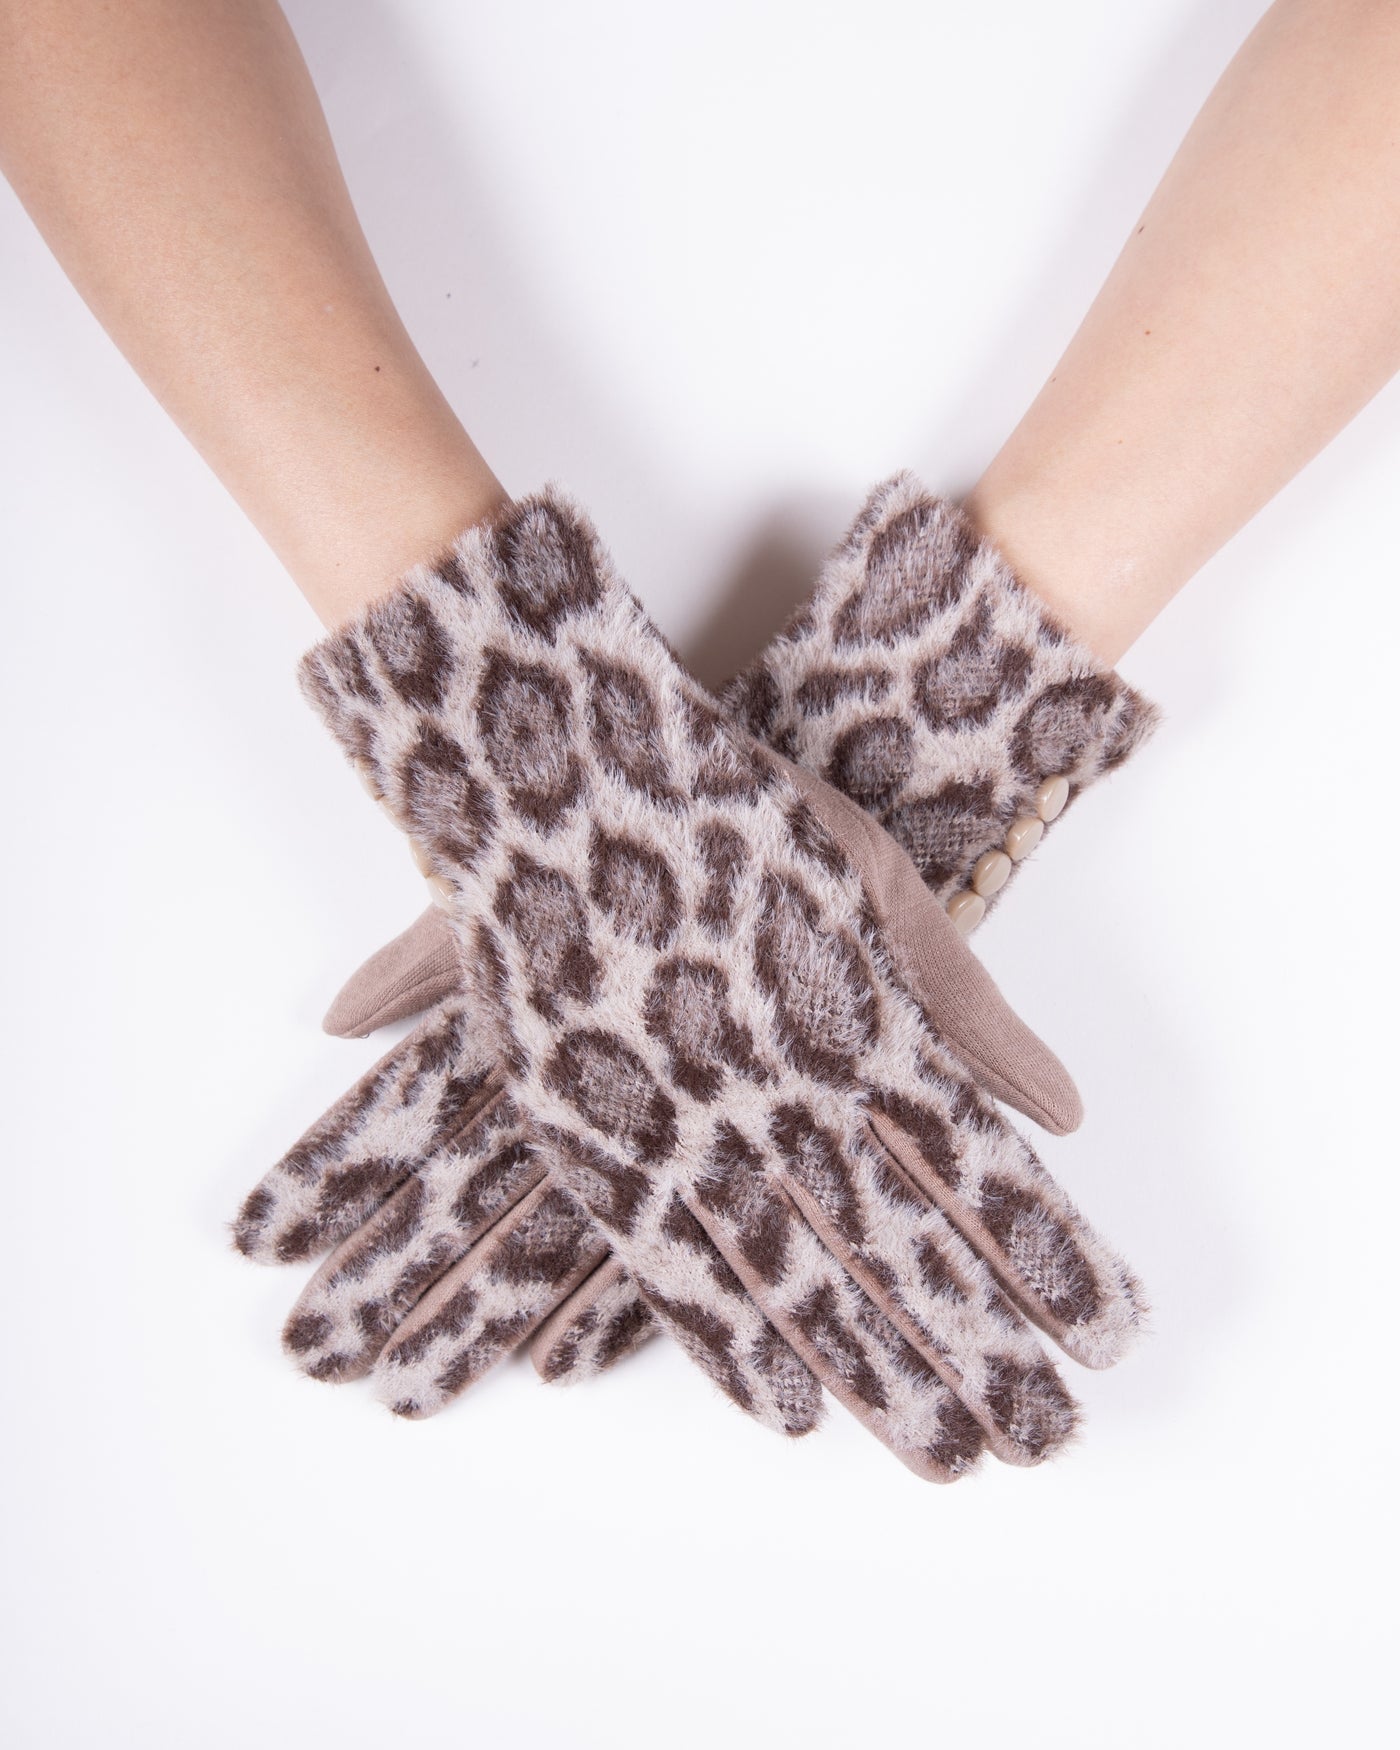 Leopard Fuzzy Gloves